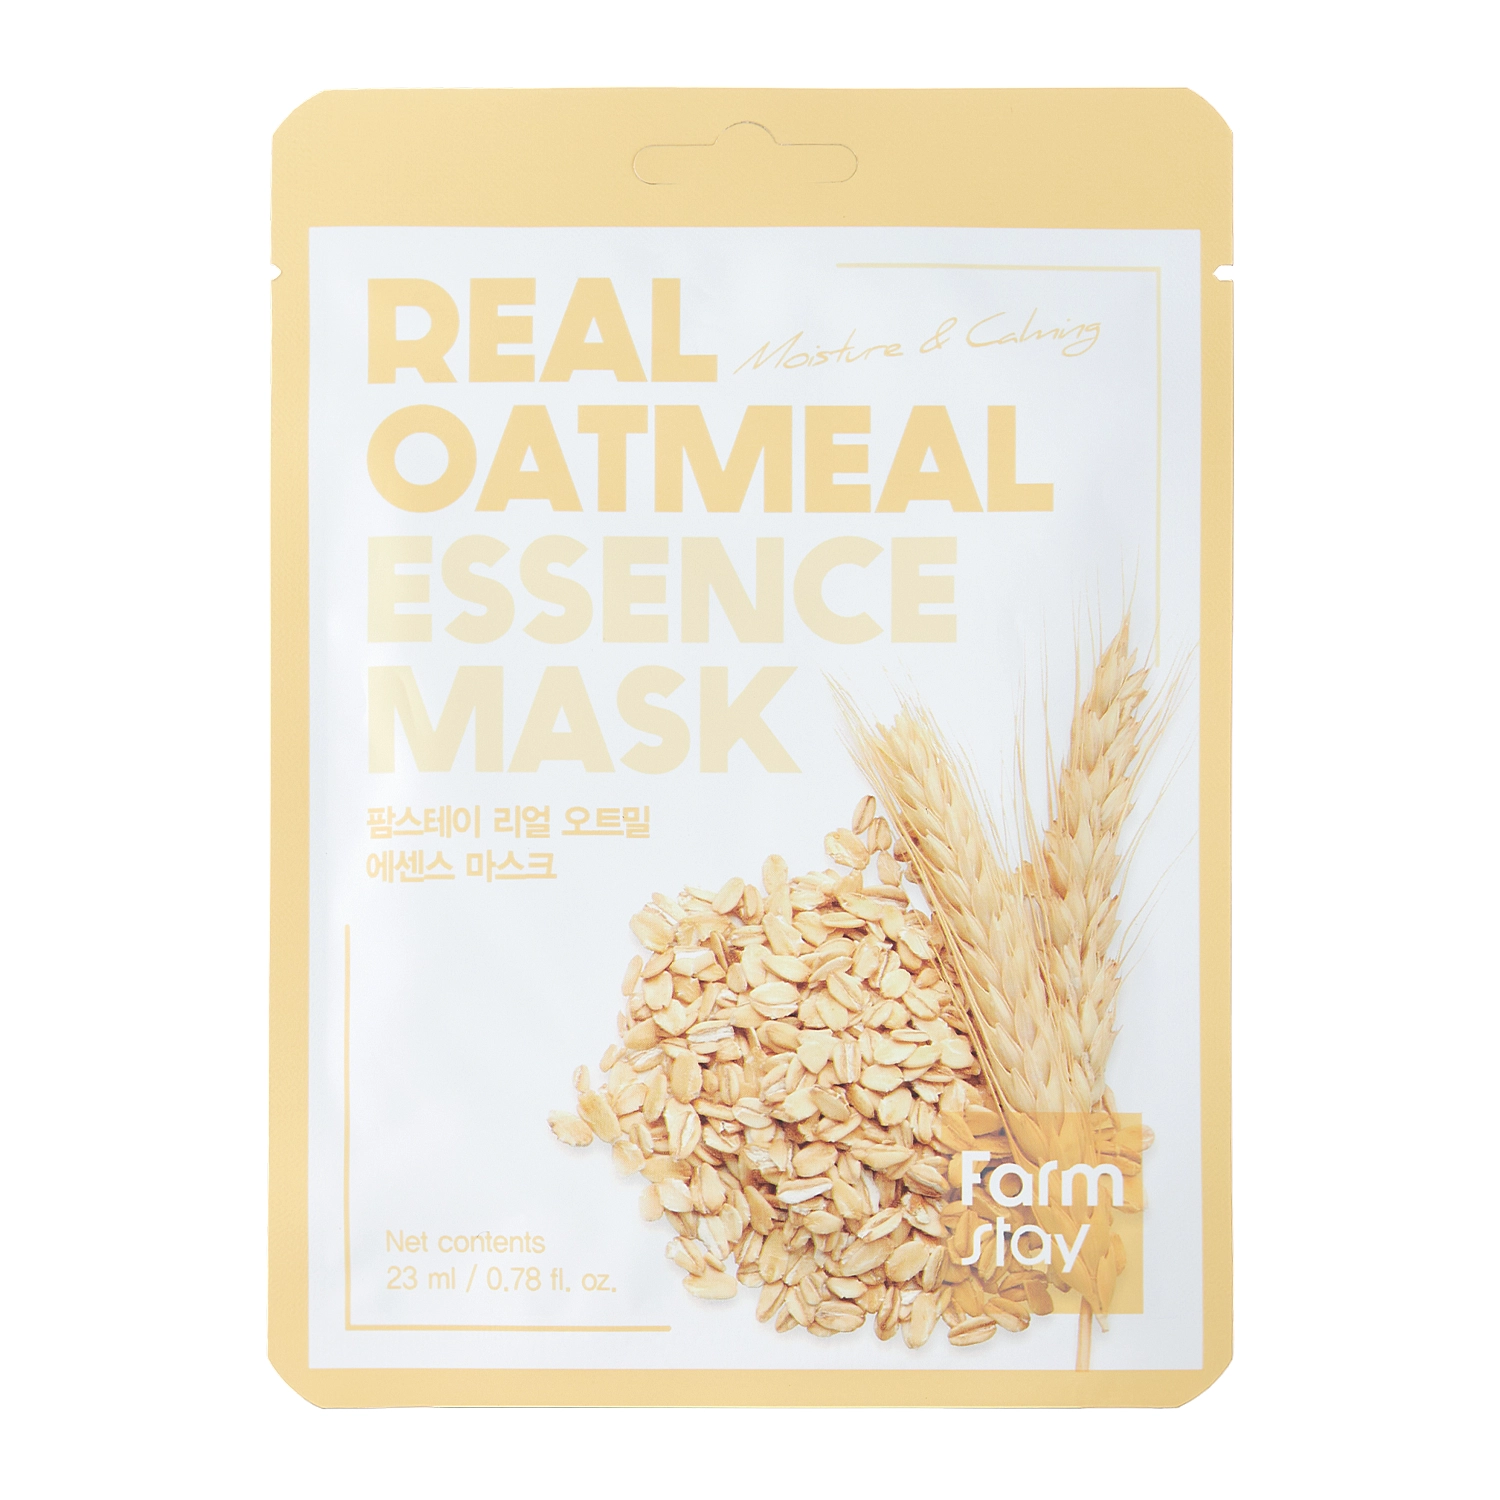 Farmstay - Oatmeal Essence Mask - Заспокійлива тканинна маска з екстрактом вівса - 23ml/1шт. 